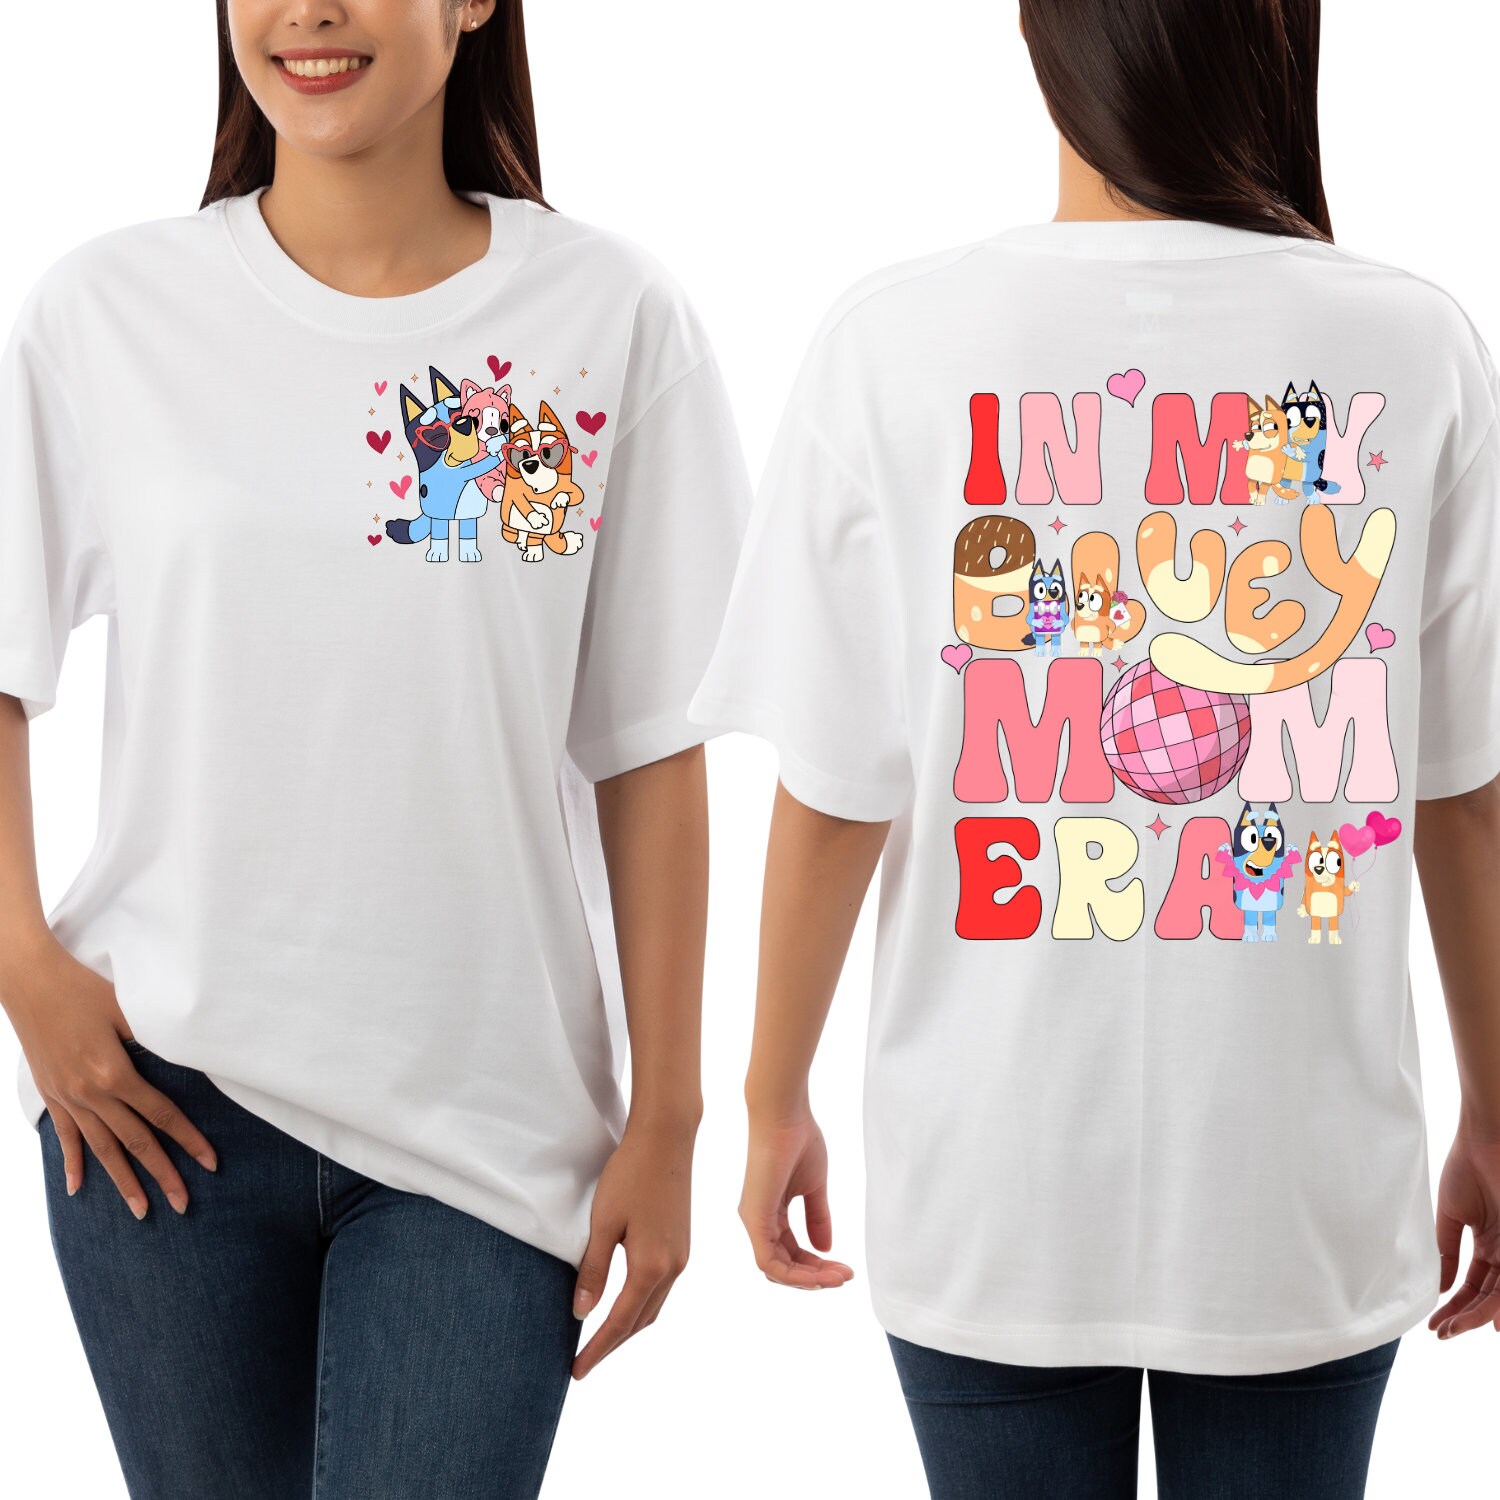 BlueyDad Mothers Day Shirt | BlueyDad Double Sided Shirt